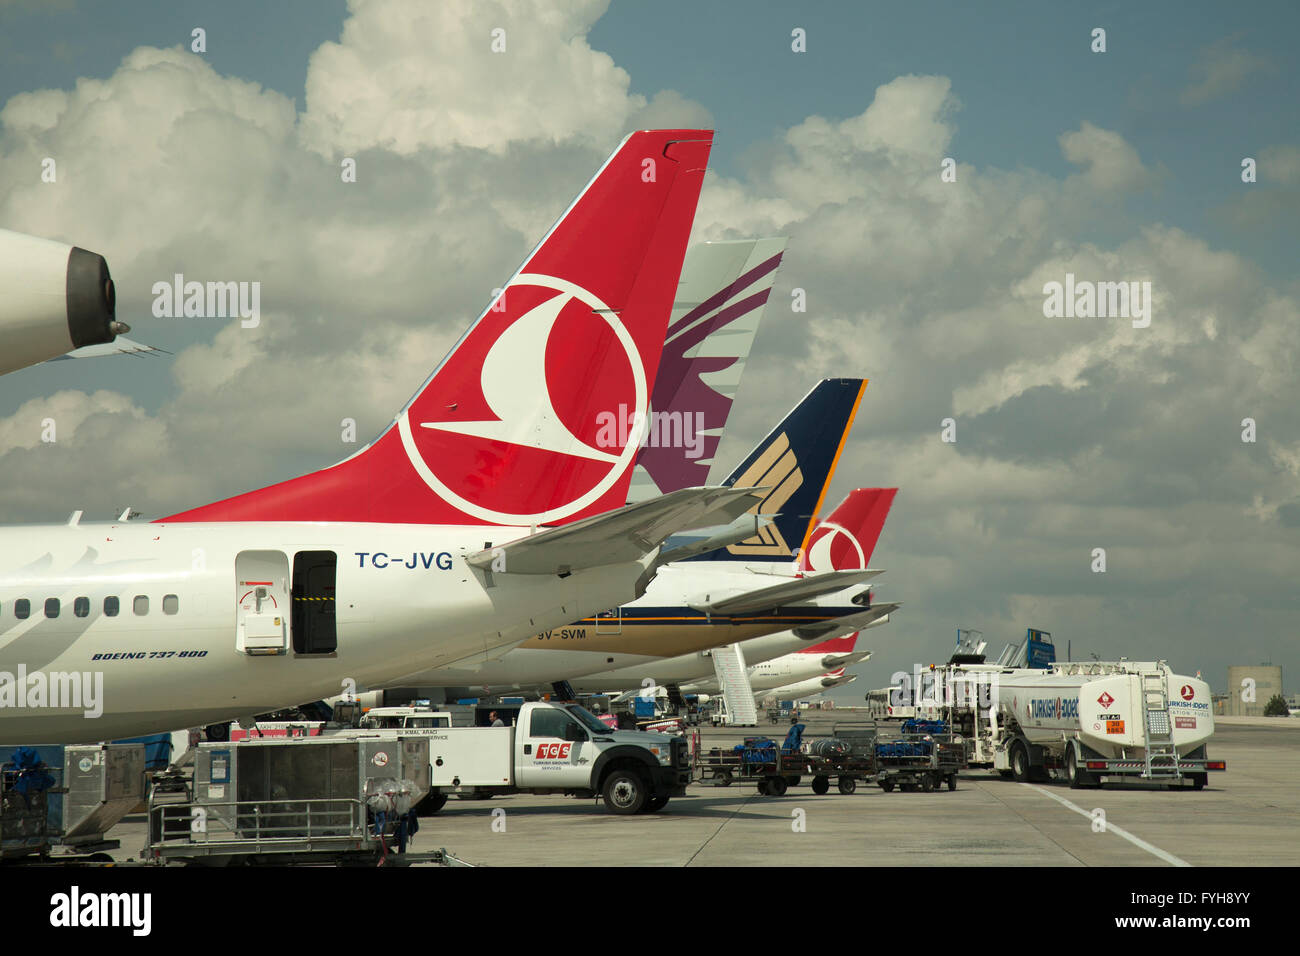 Avions sur le tarmac de l'aéroport d'Istanbul, Turquie. Des avions de la Turkish Airlines, Qatar Airlines et Singapore Airlines. Banque D'Images